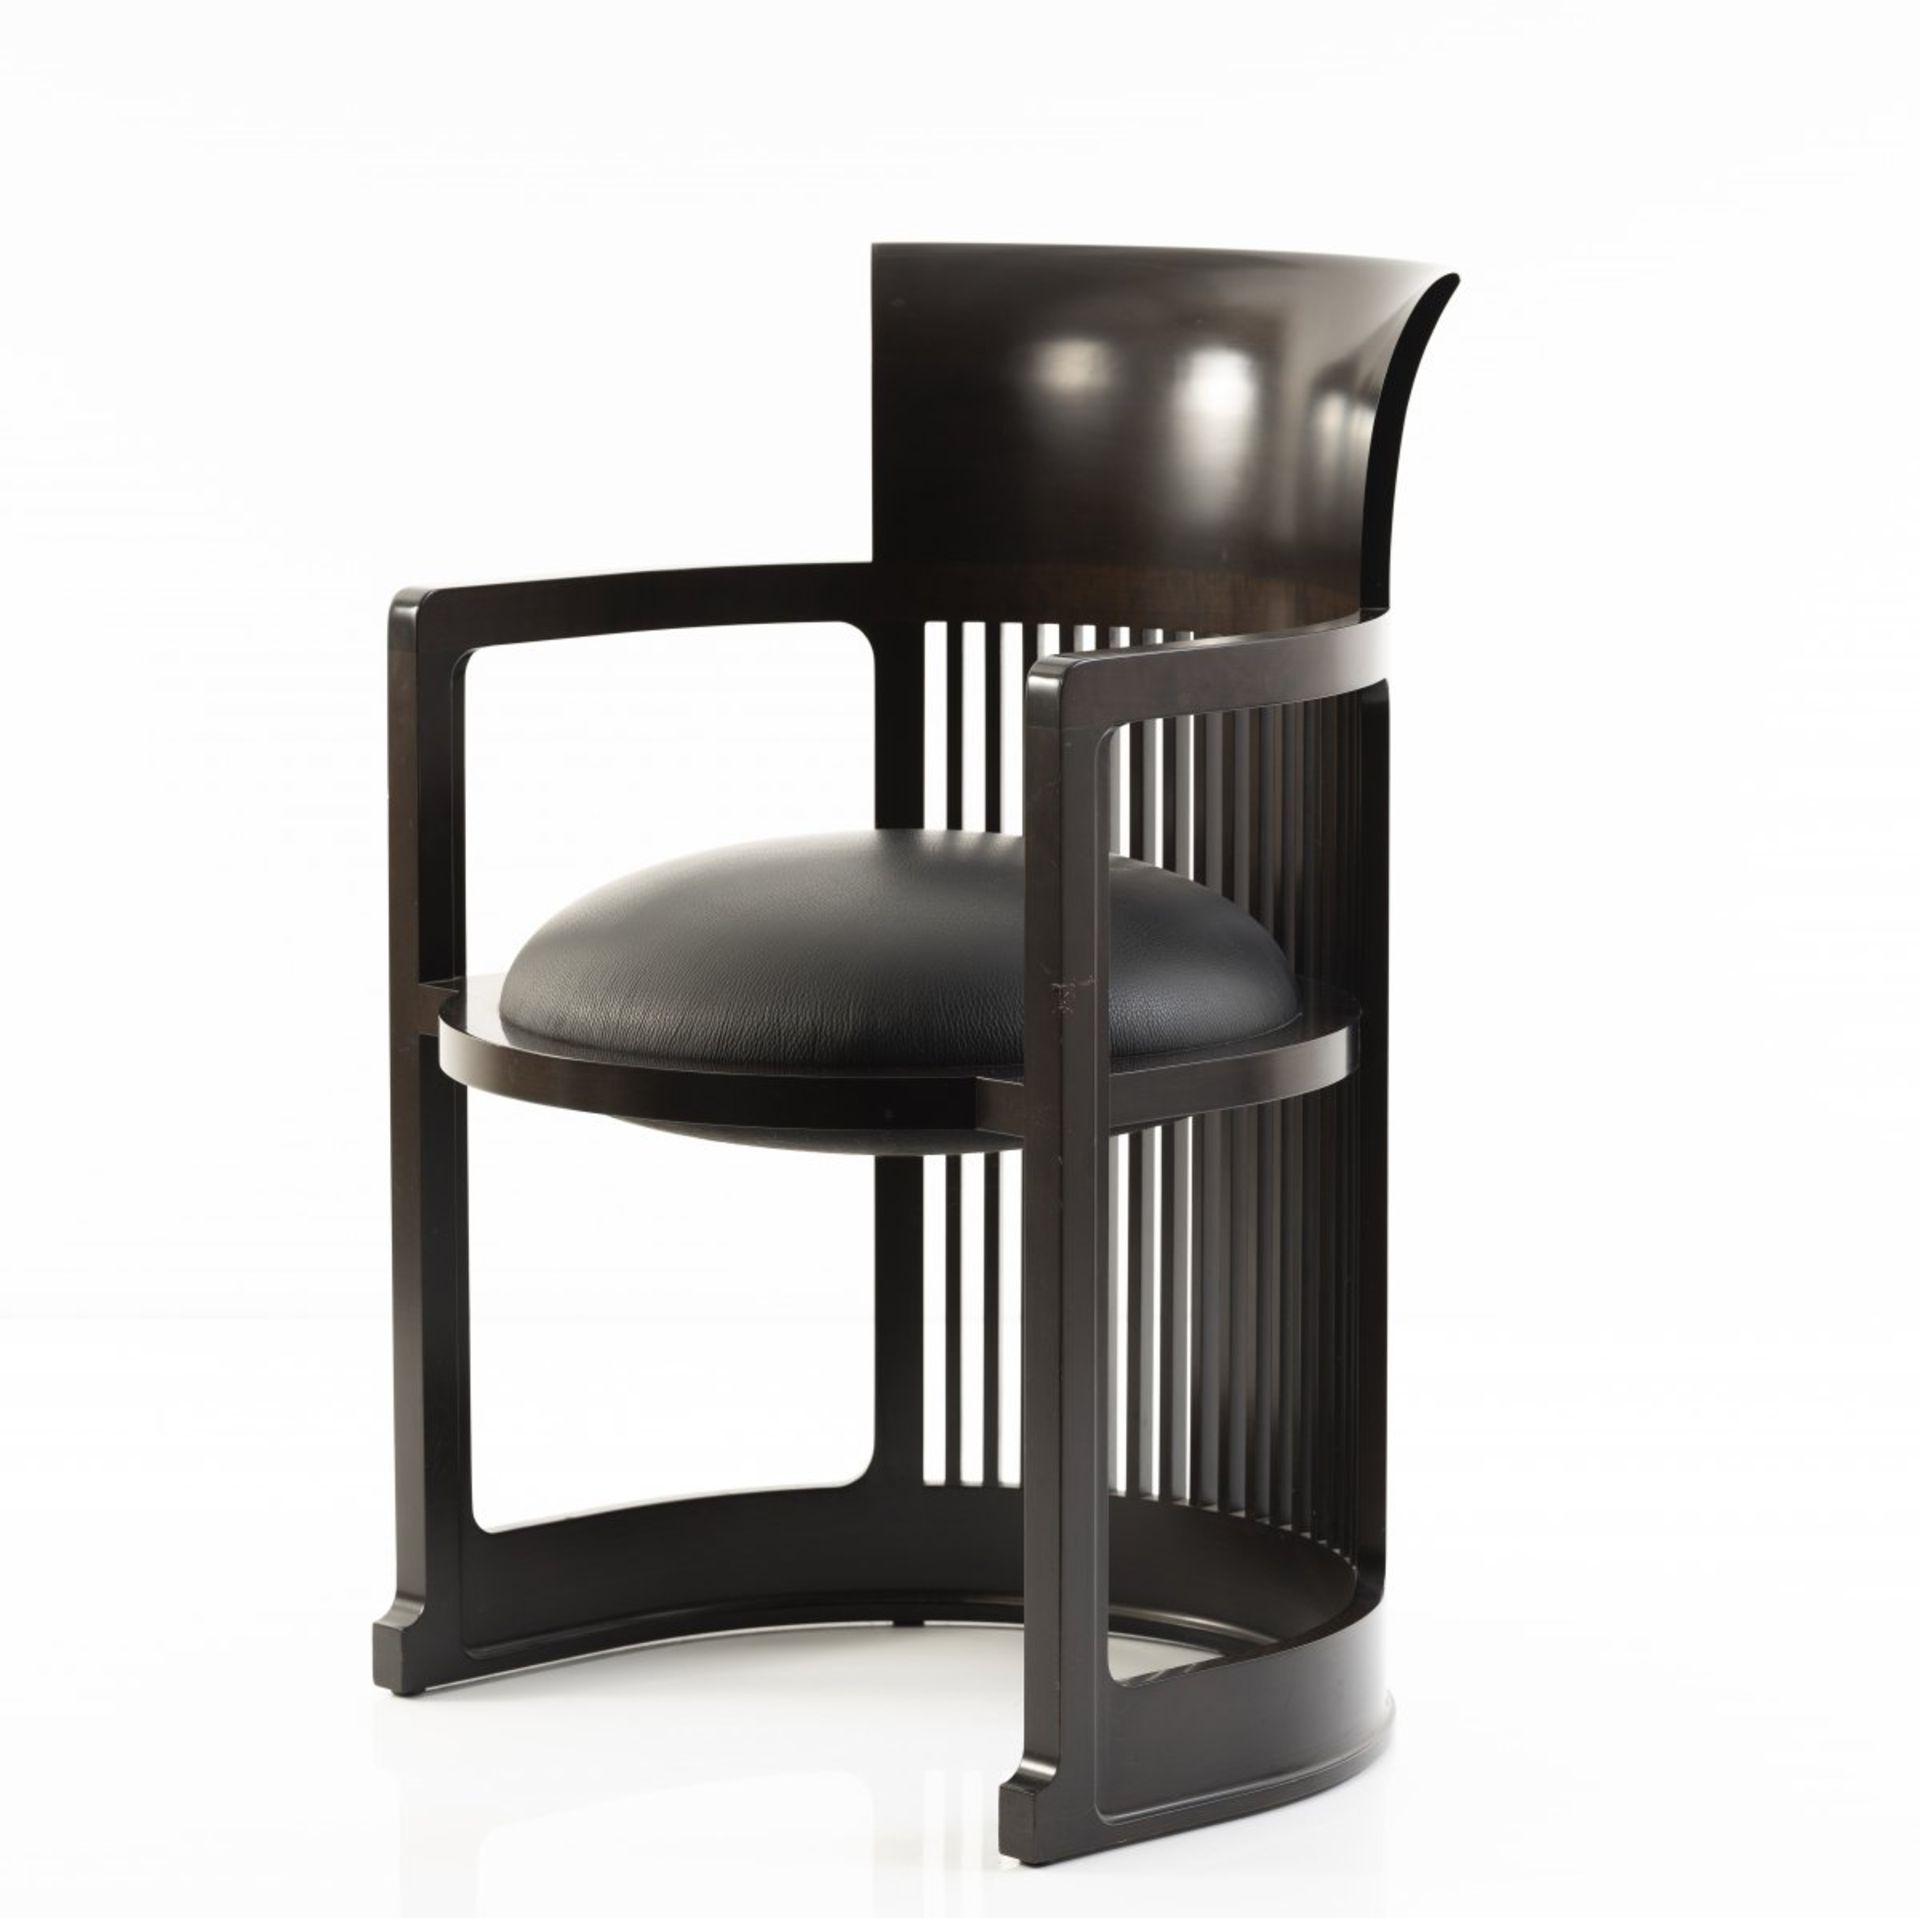 Frank Lloyd Wright, Armlehnstuhl 'Barrel Chair', 1904/1905